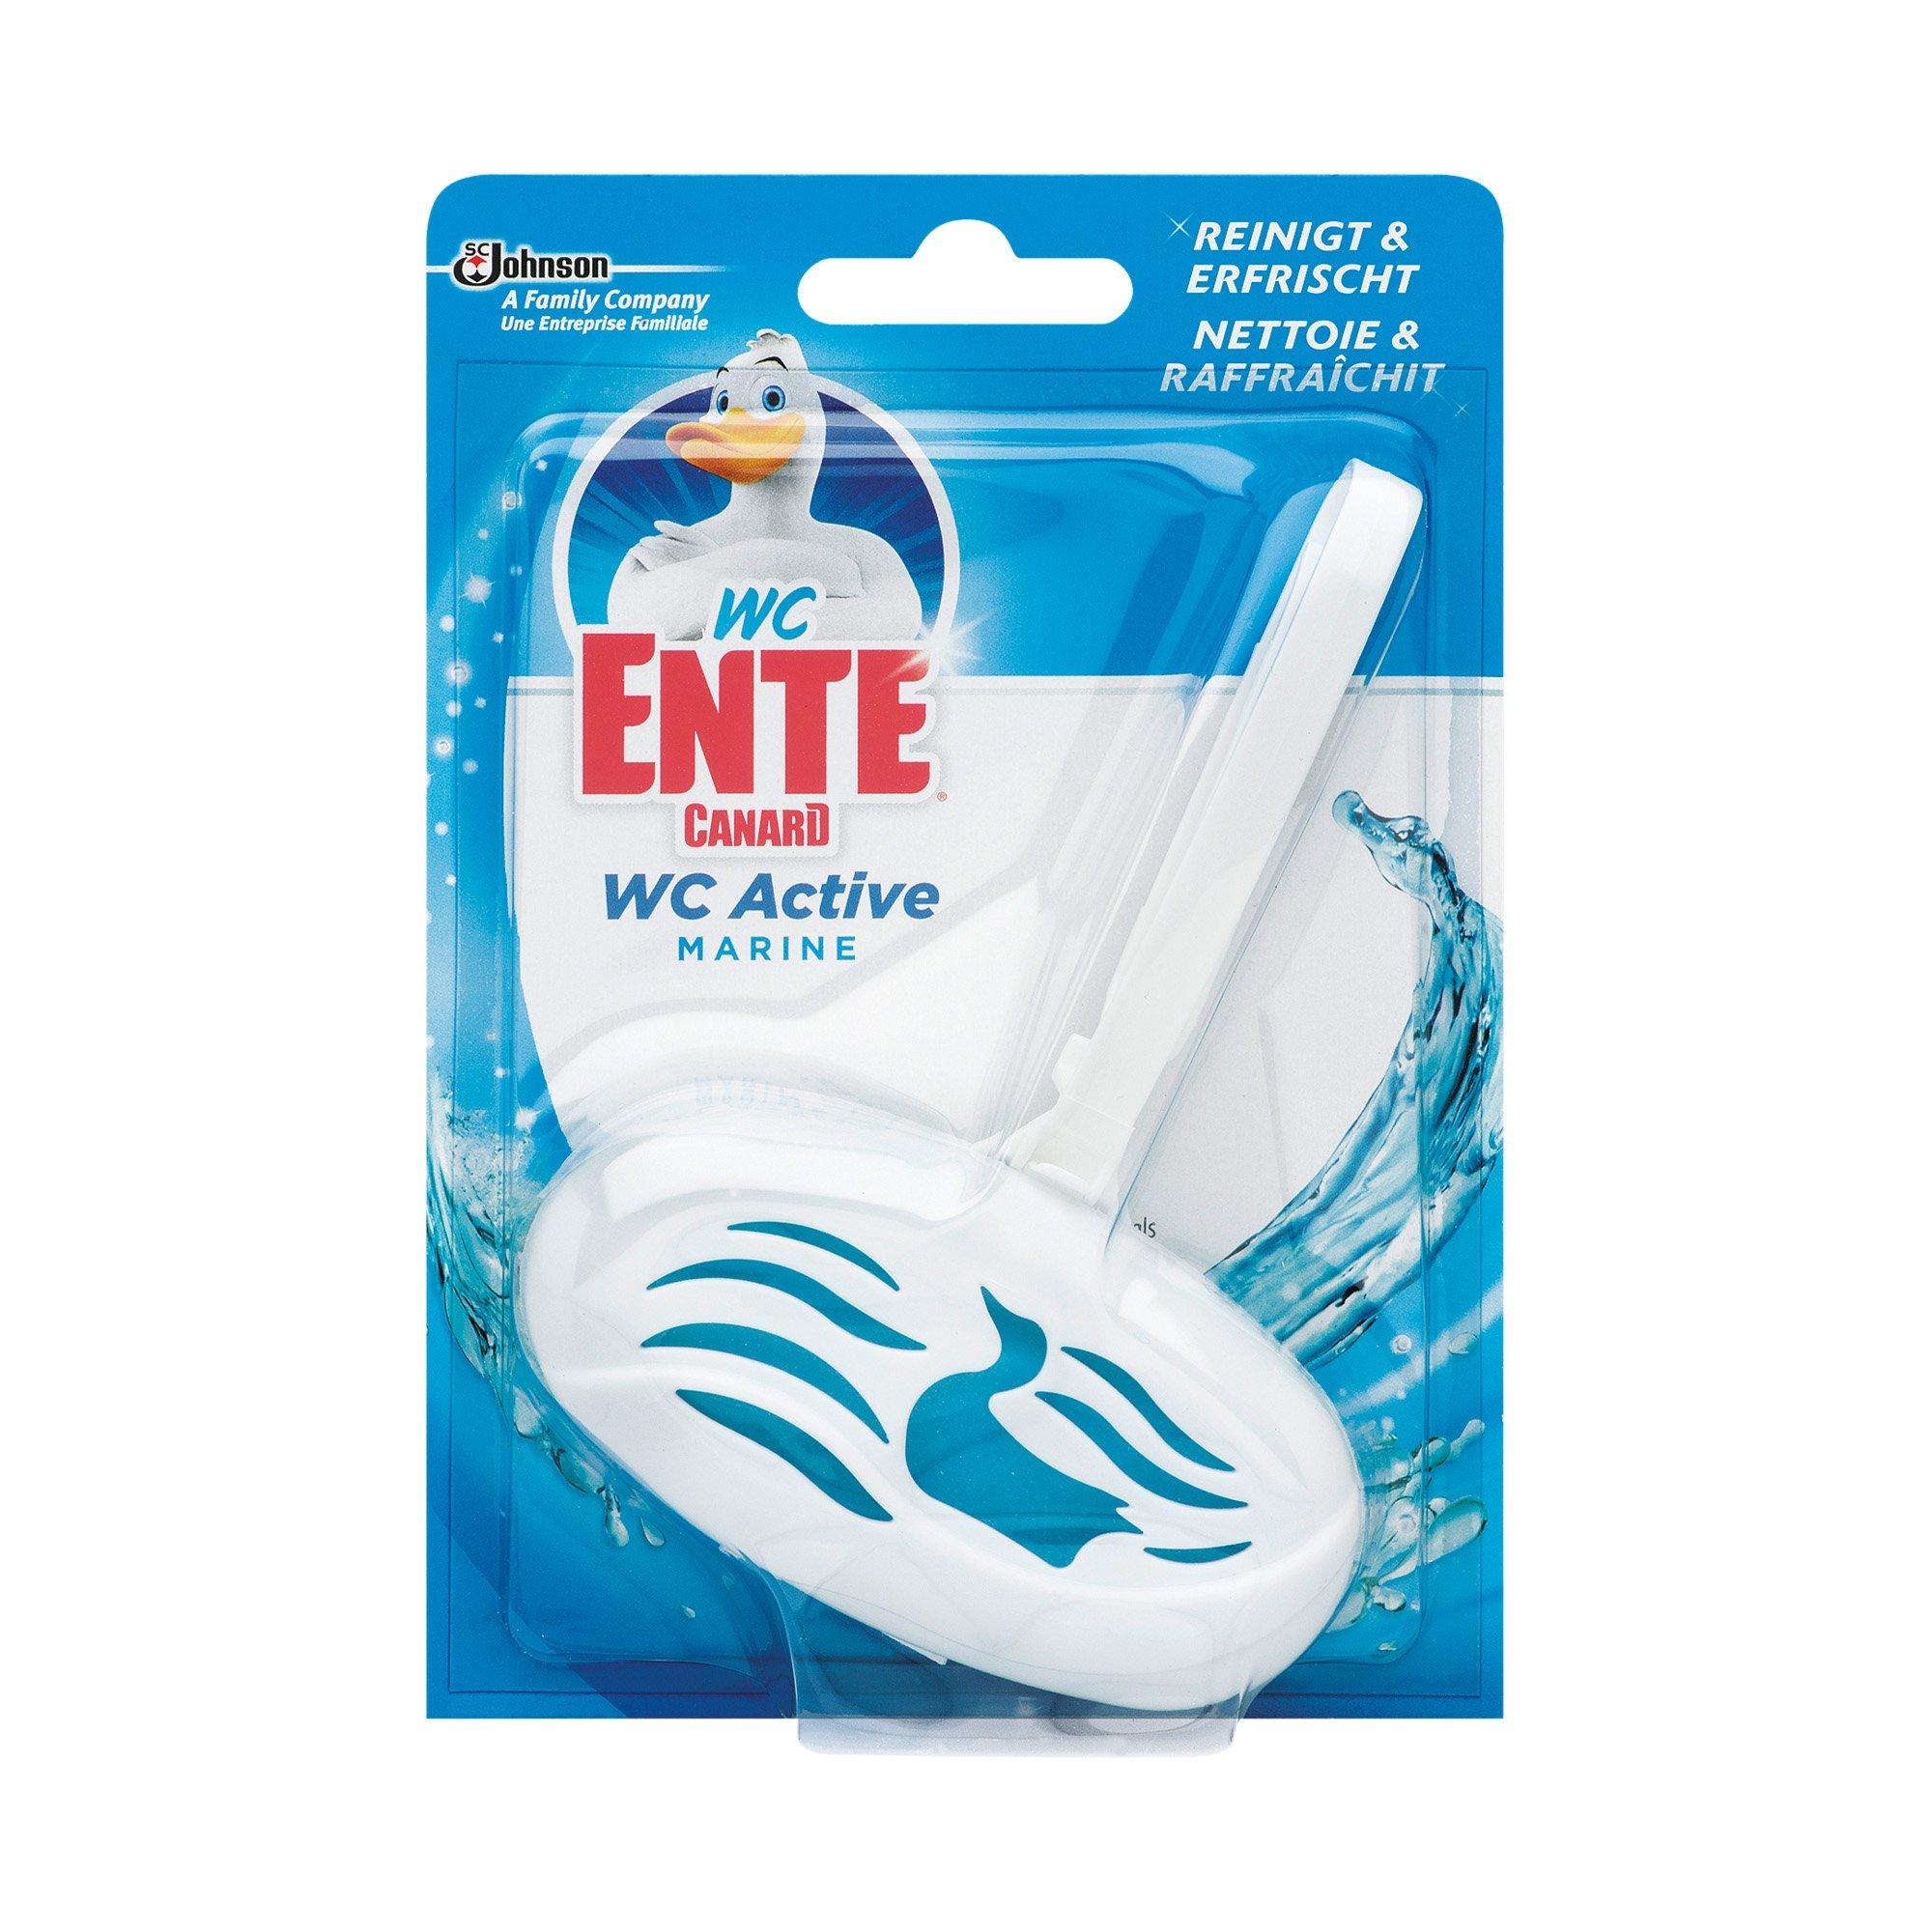 Image of WC ENTE WC Ente Active Marine - 40g